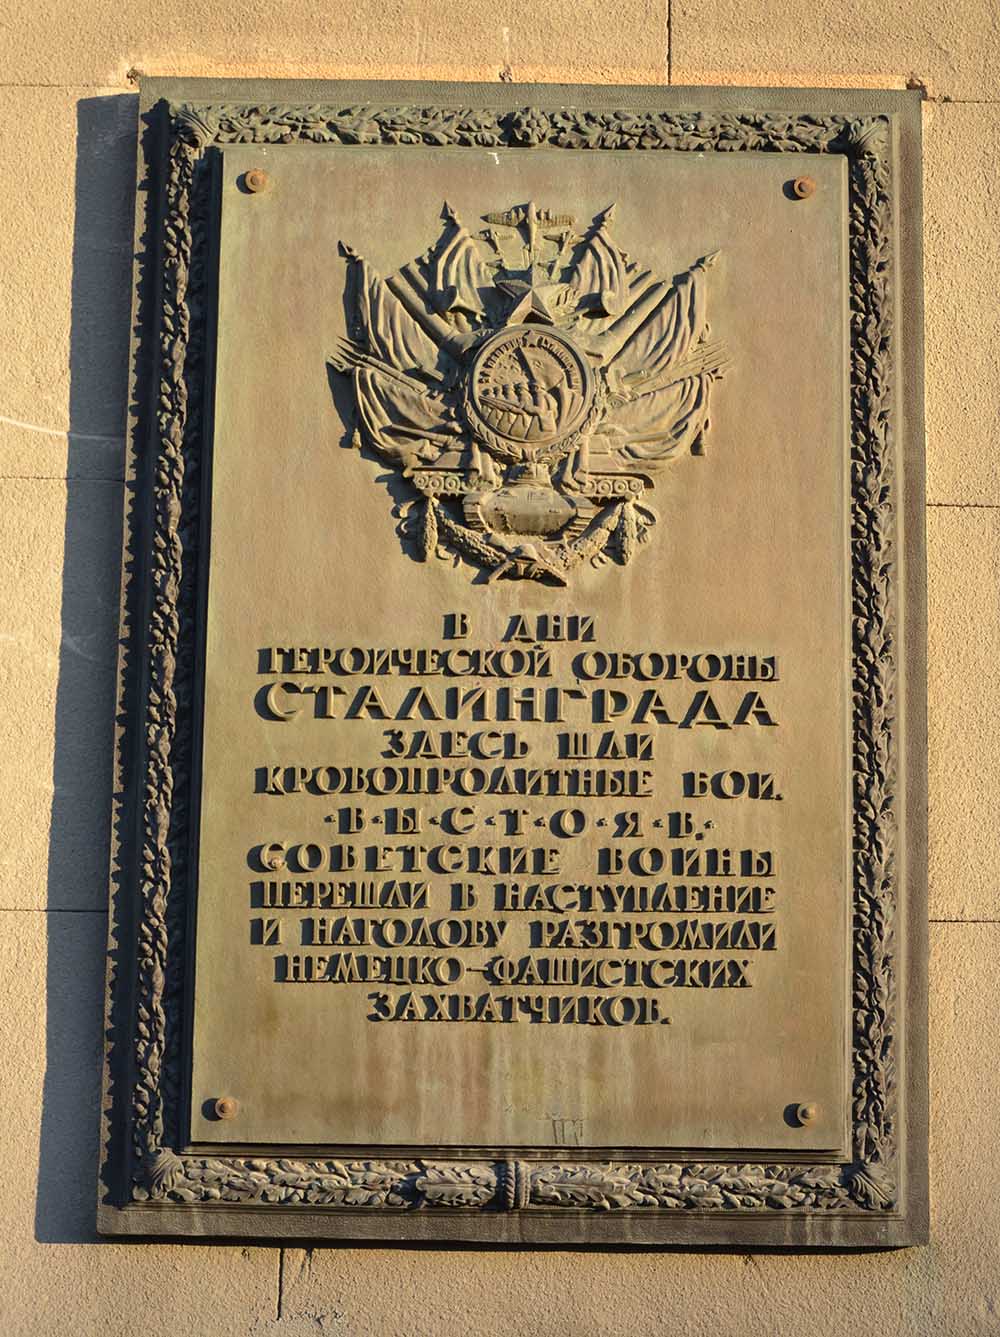 Memorial Fighting 1942-1943 Technical College Volgograd